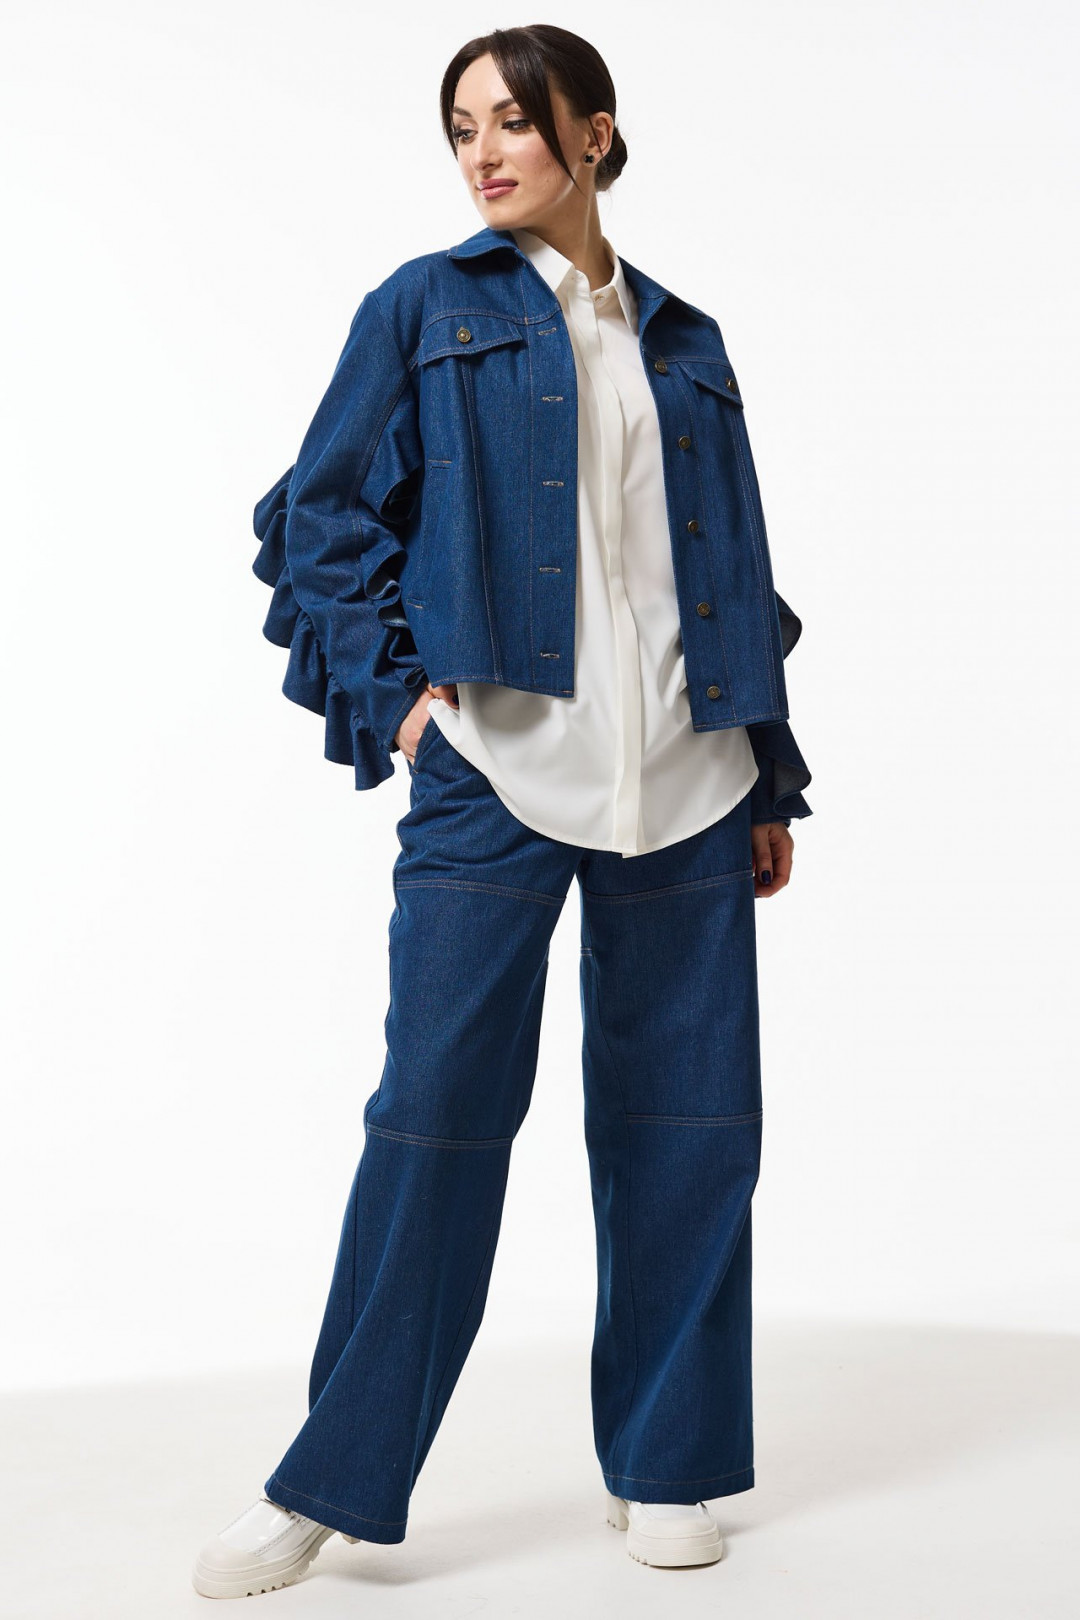 Жакет MisLana 1051ж синий джинс